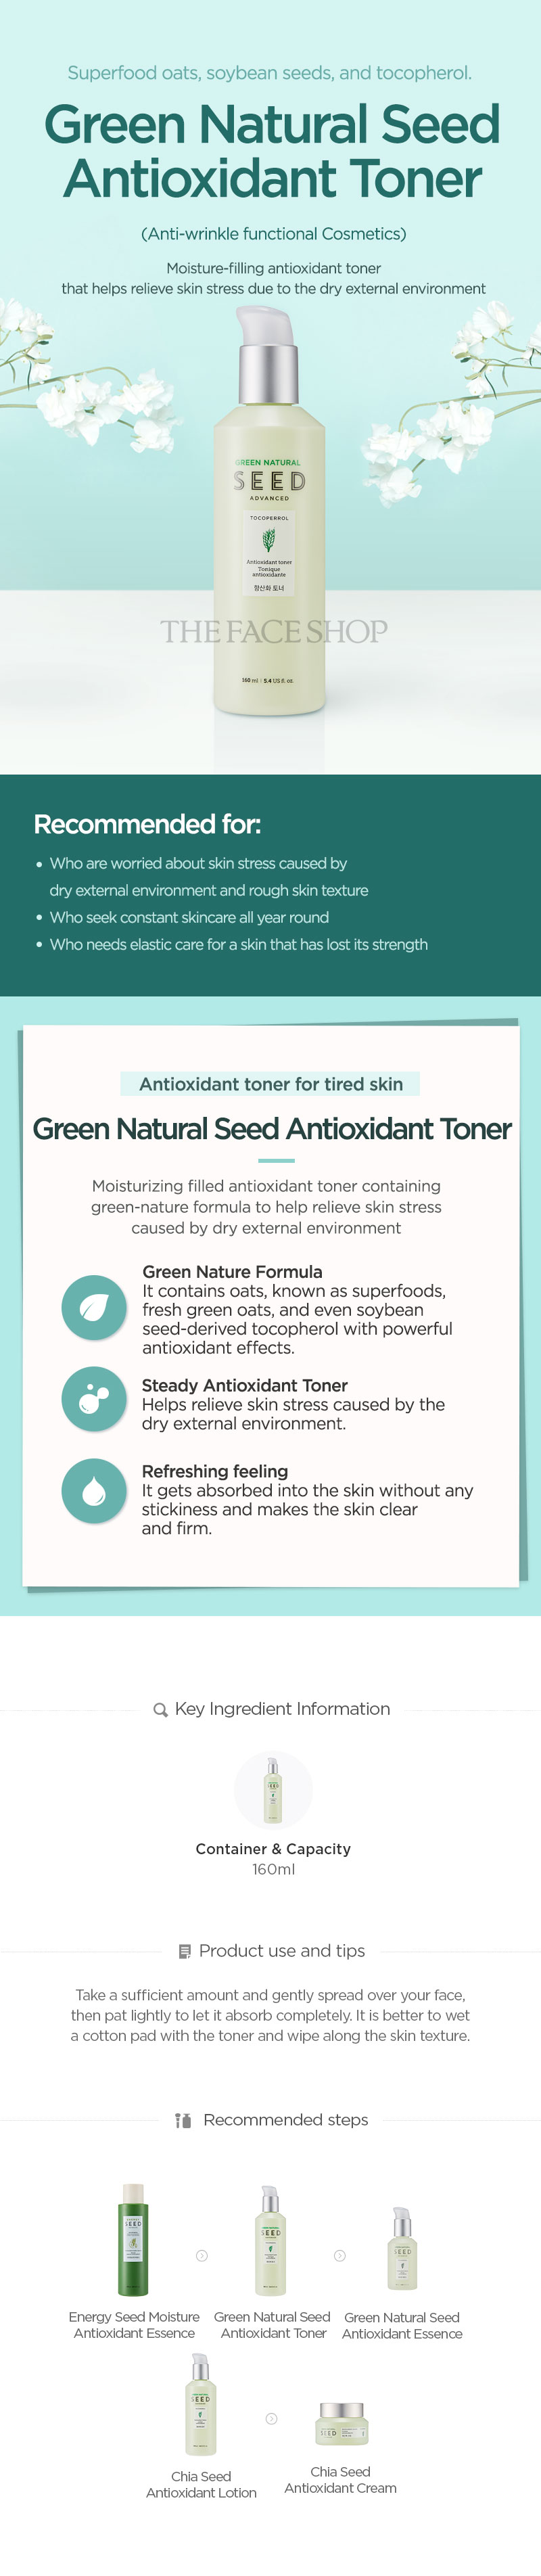 Green Natural Seed Anti Oxid Toner